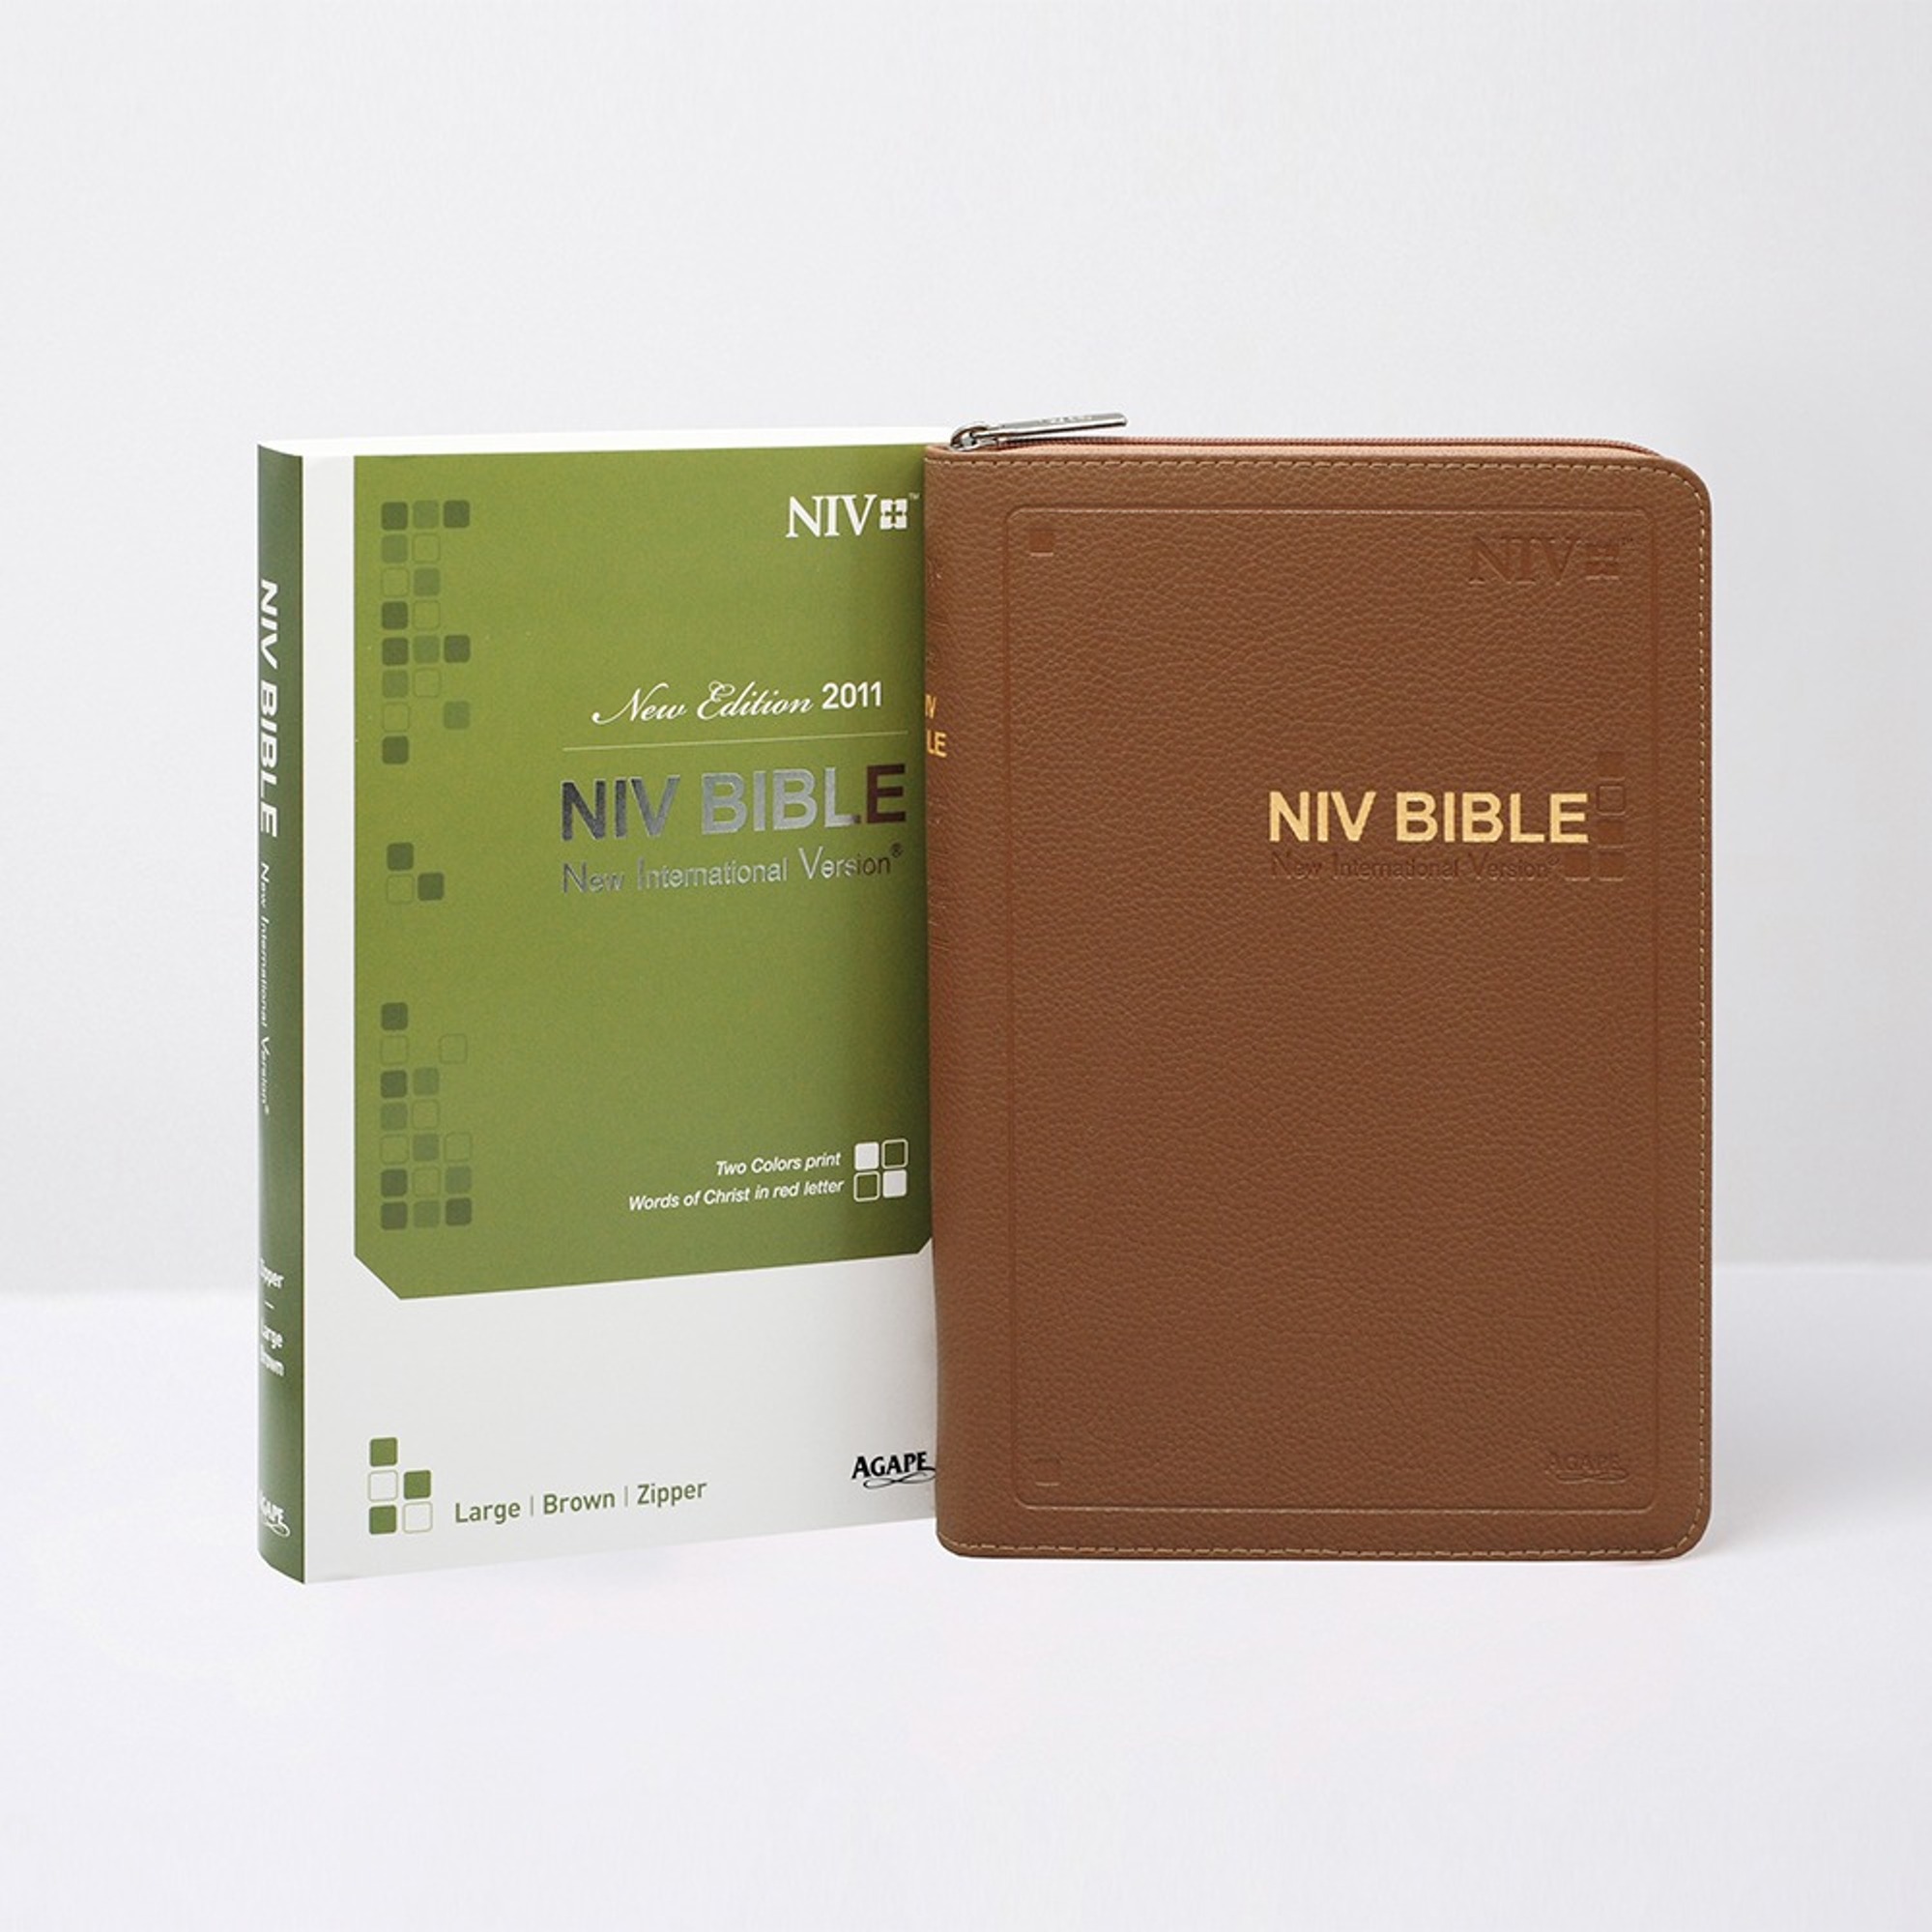 NIVBIBLE 영문성경/대단본/지퍼/브라운